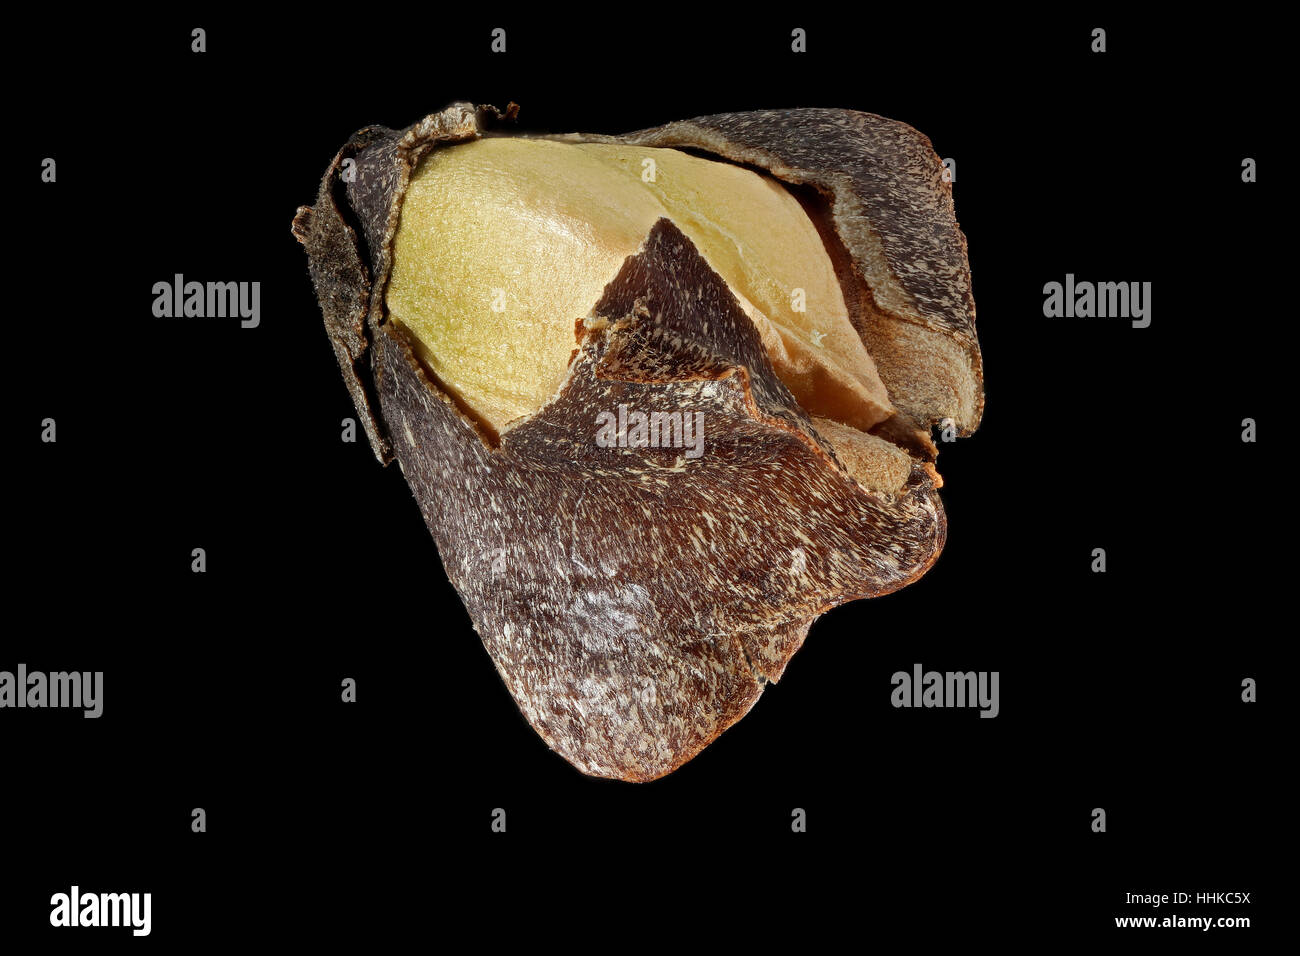 Fagopyrum esculentum, Buckwheat, Echter Buchweizen, fruit with seed, close up Stock Photo